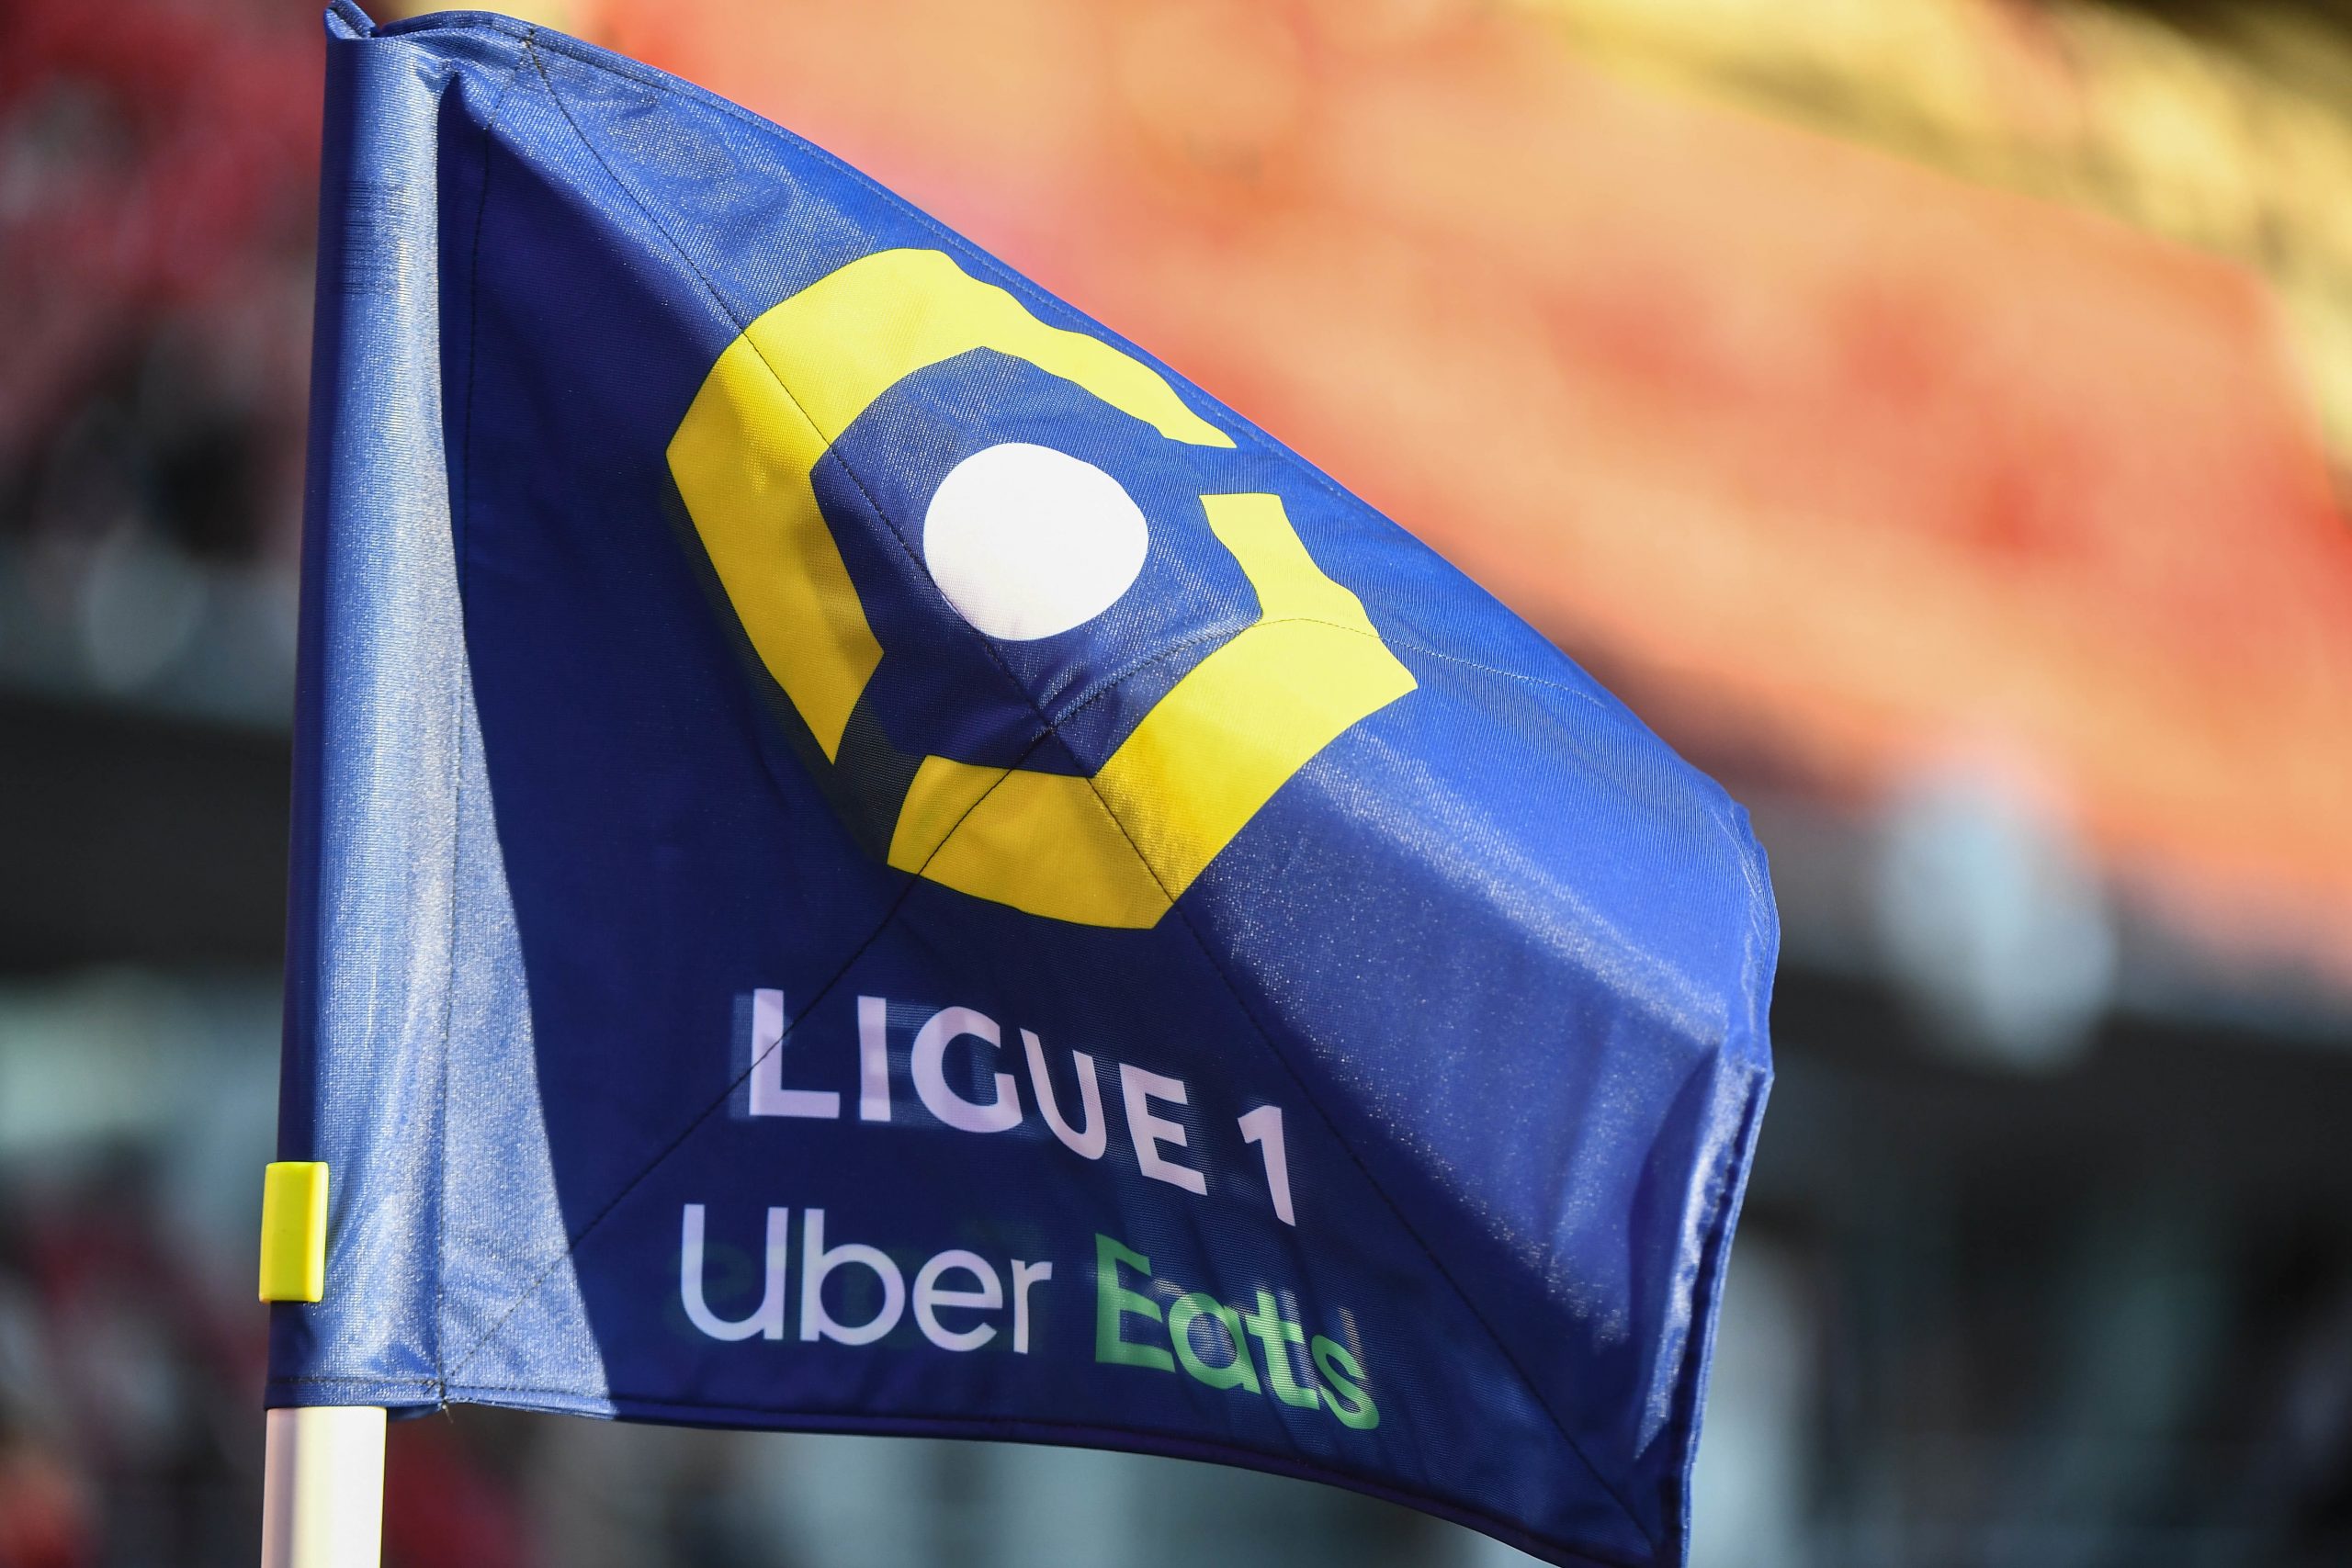 Ligue 1 Uber Eats